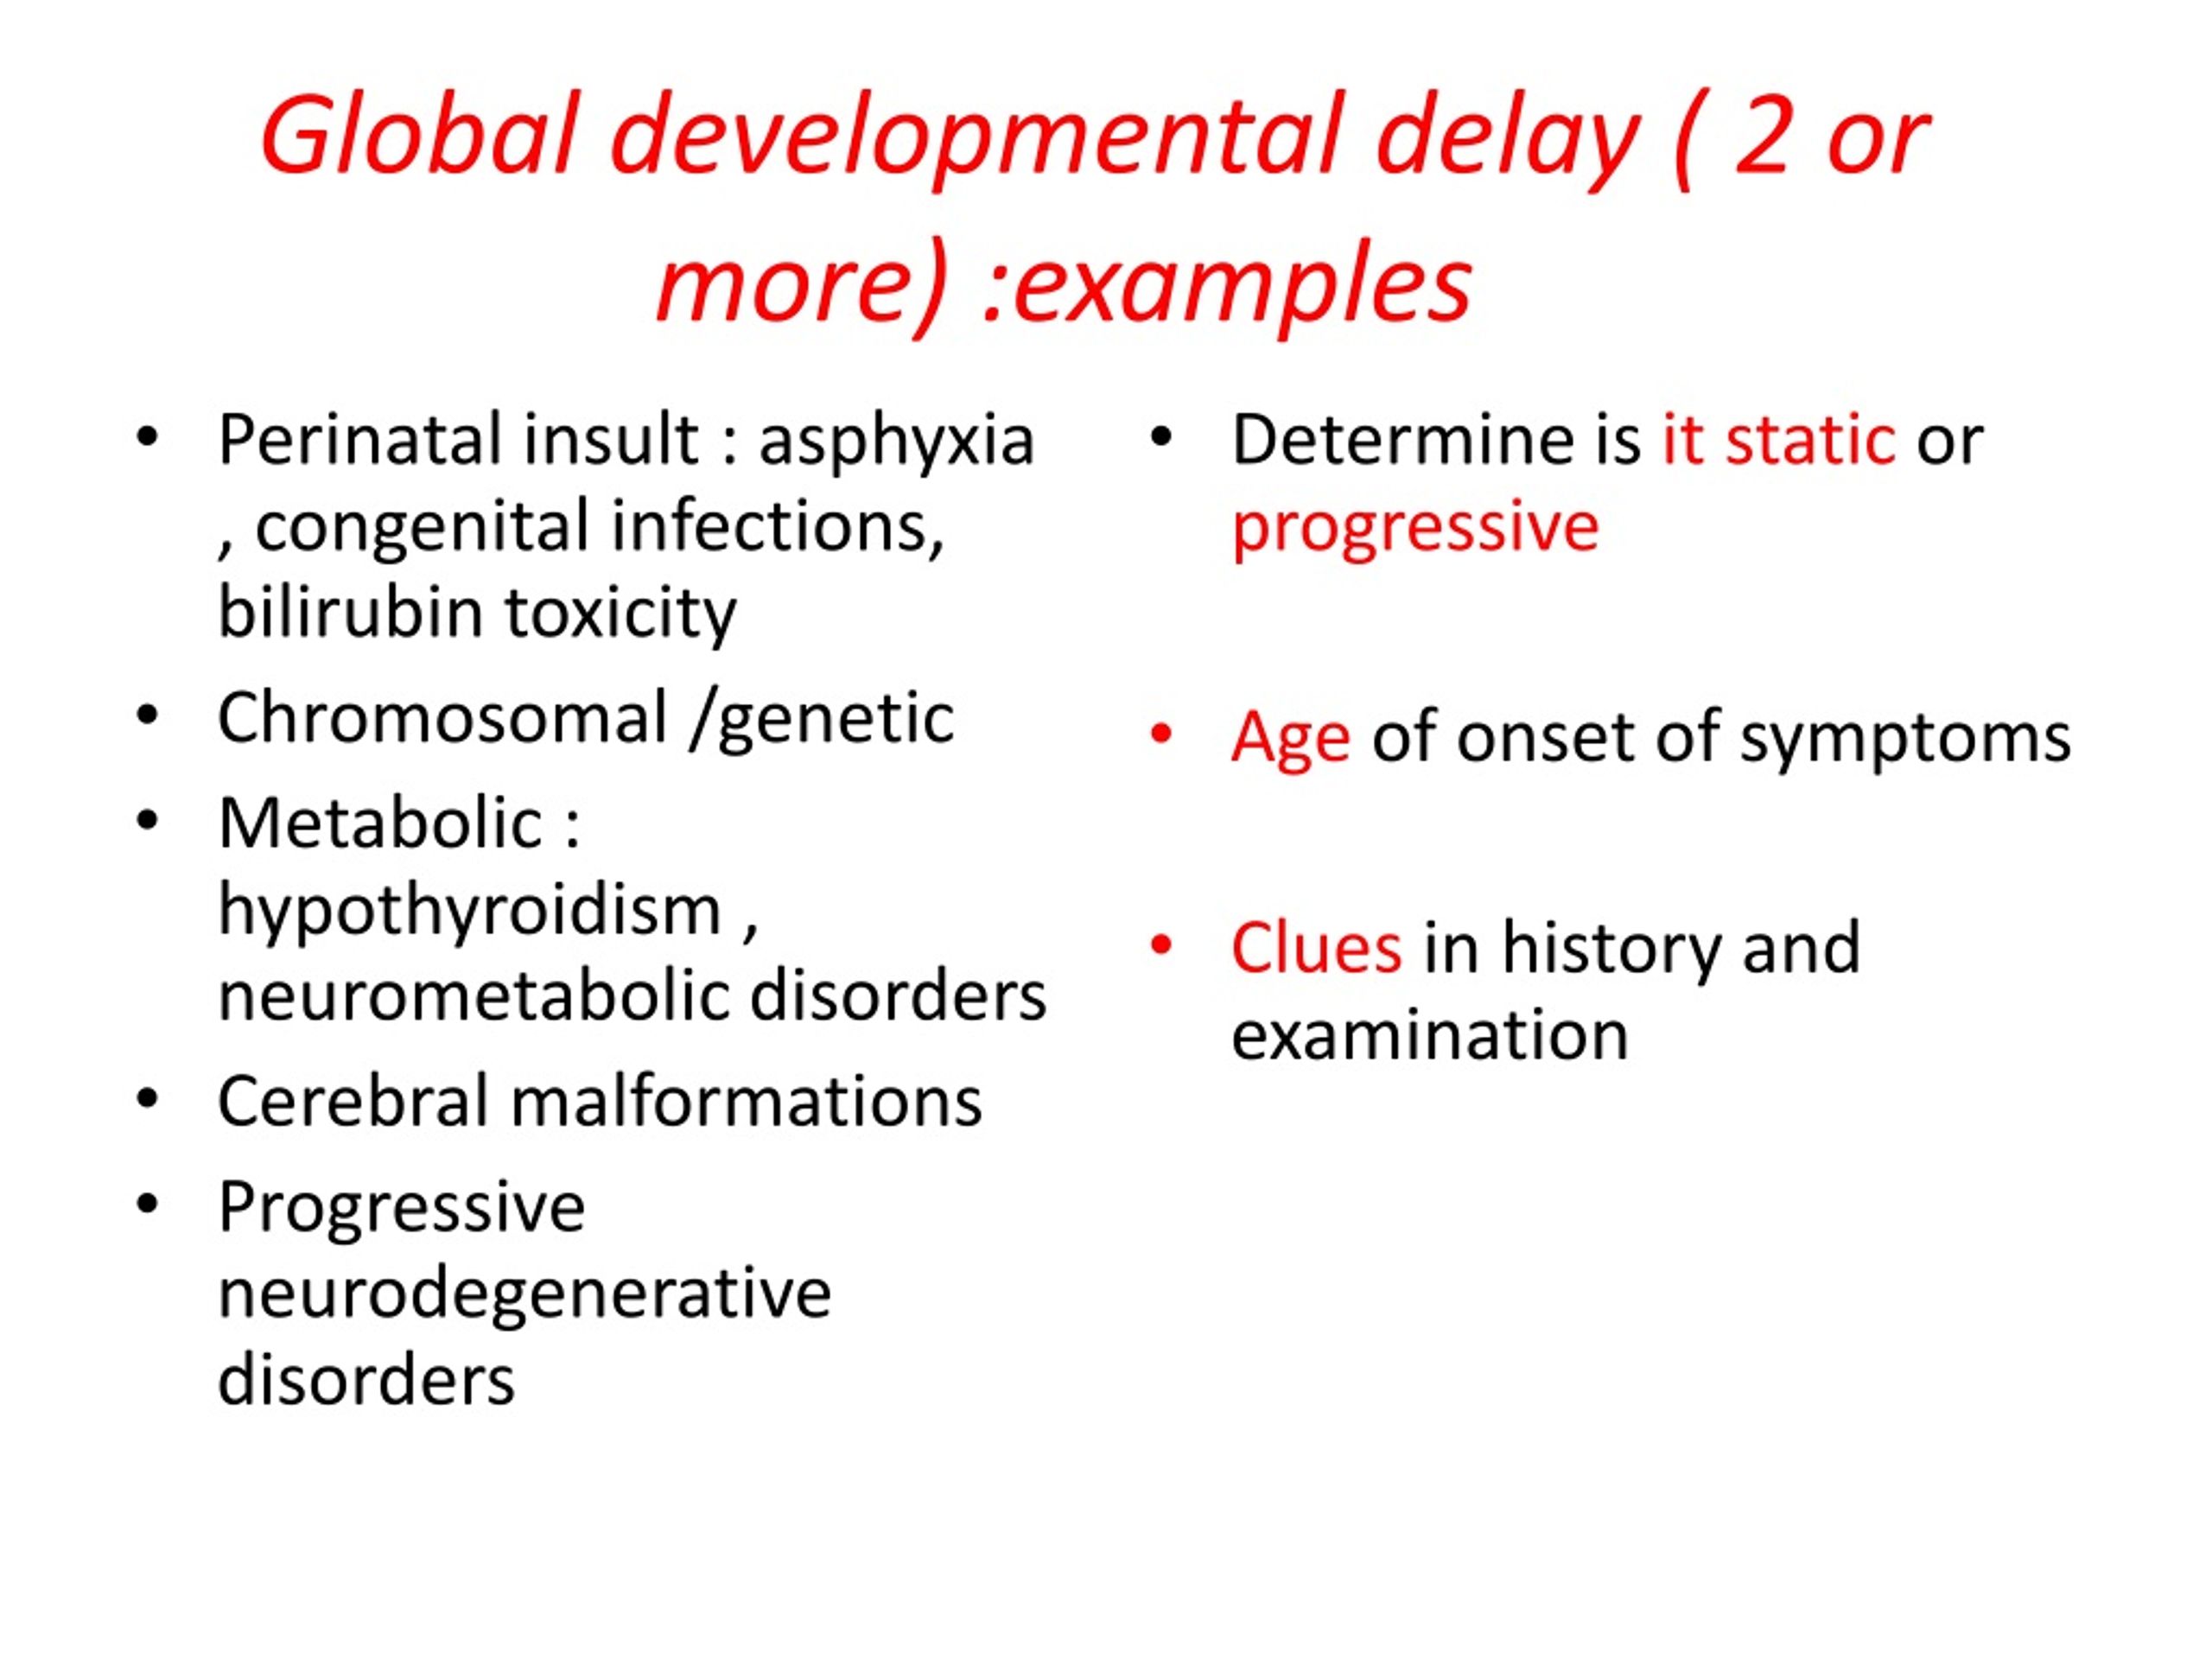 developmental delay hypothesis